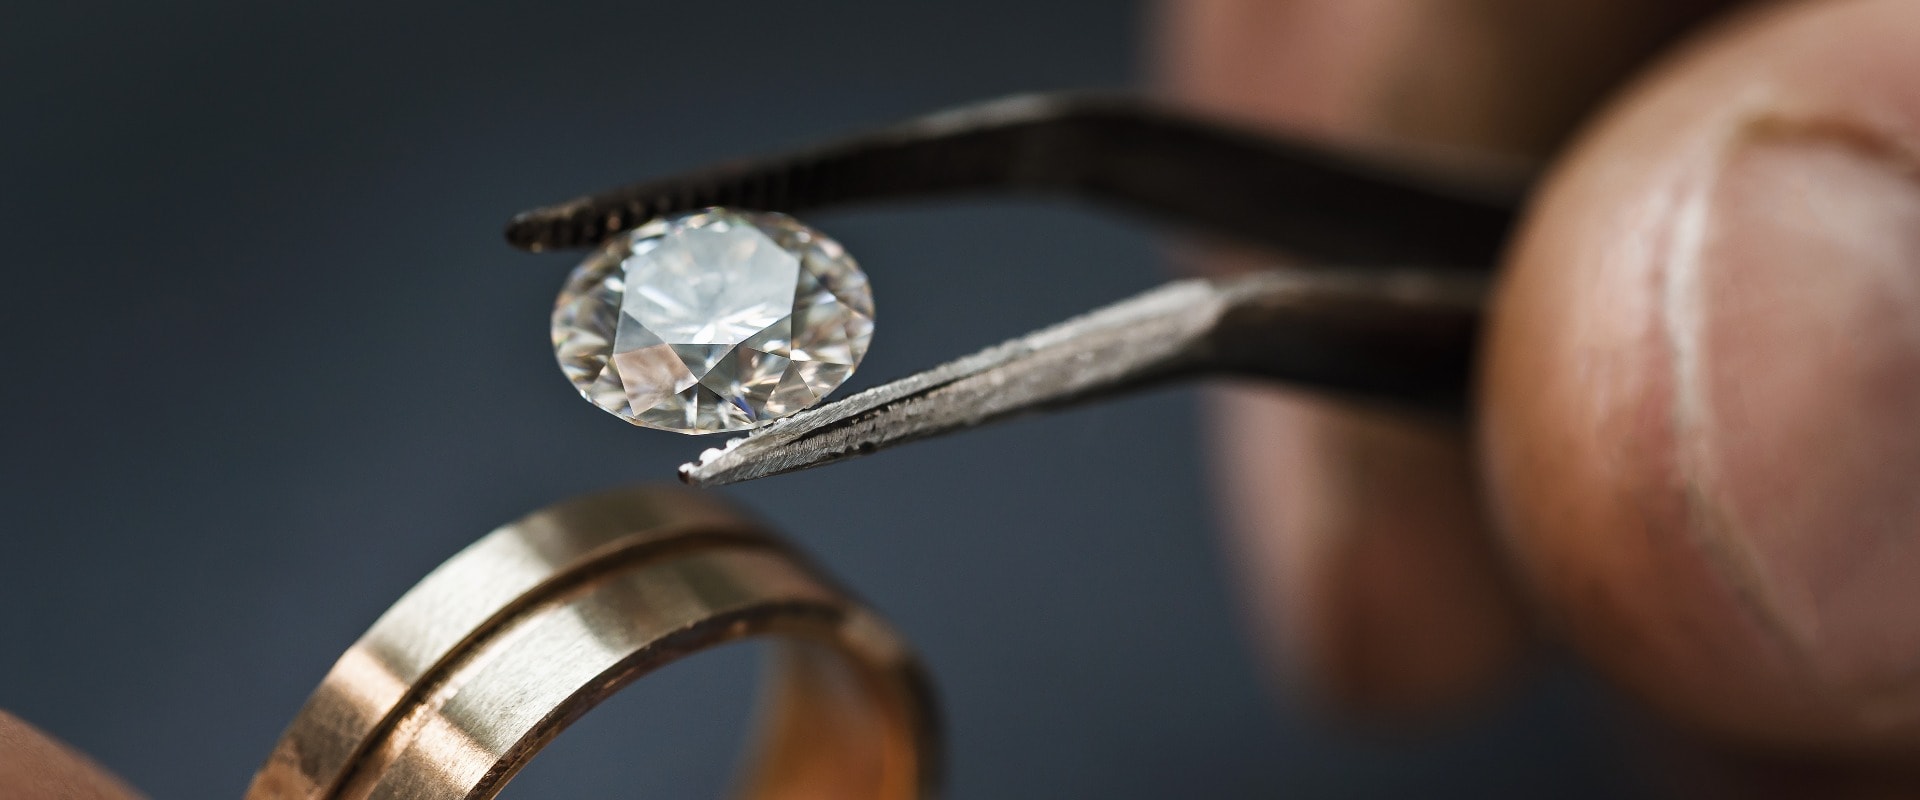 Juwelier wählt einen Edelstein für einen zukünftigen Goldring aus, Nahaufnahme